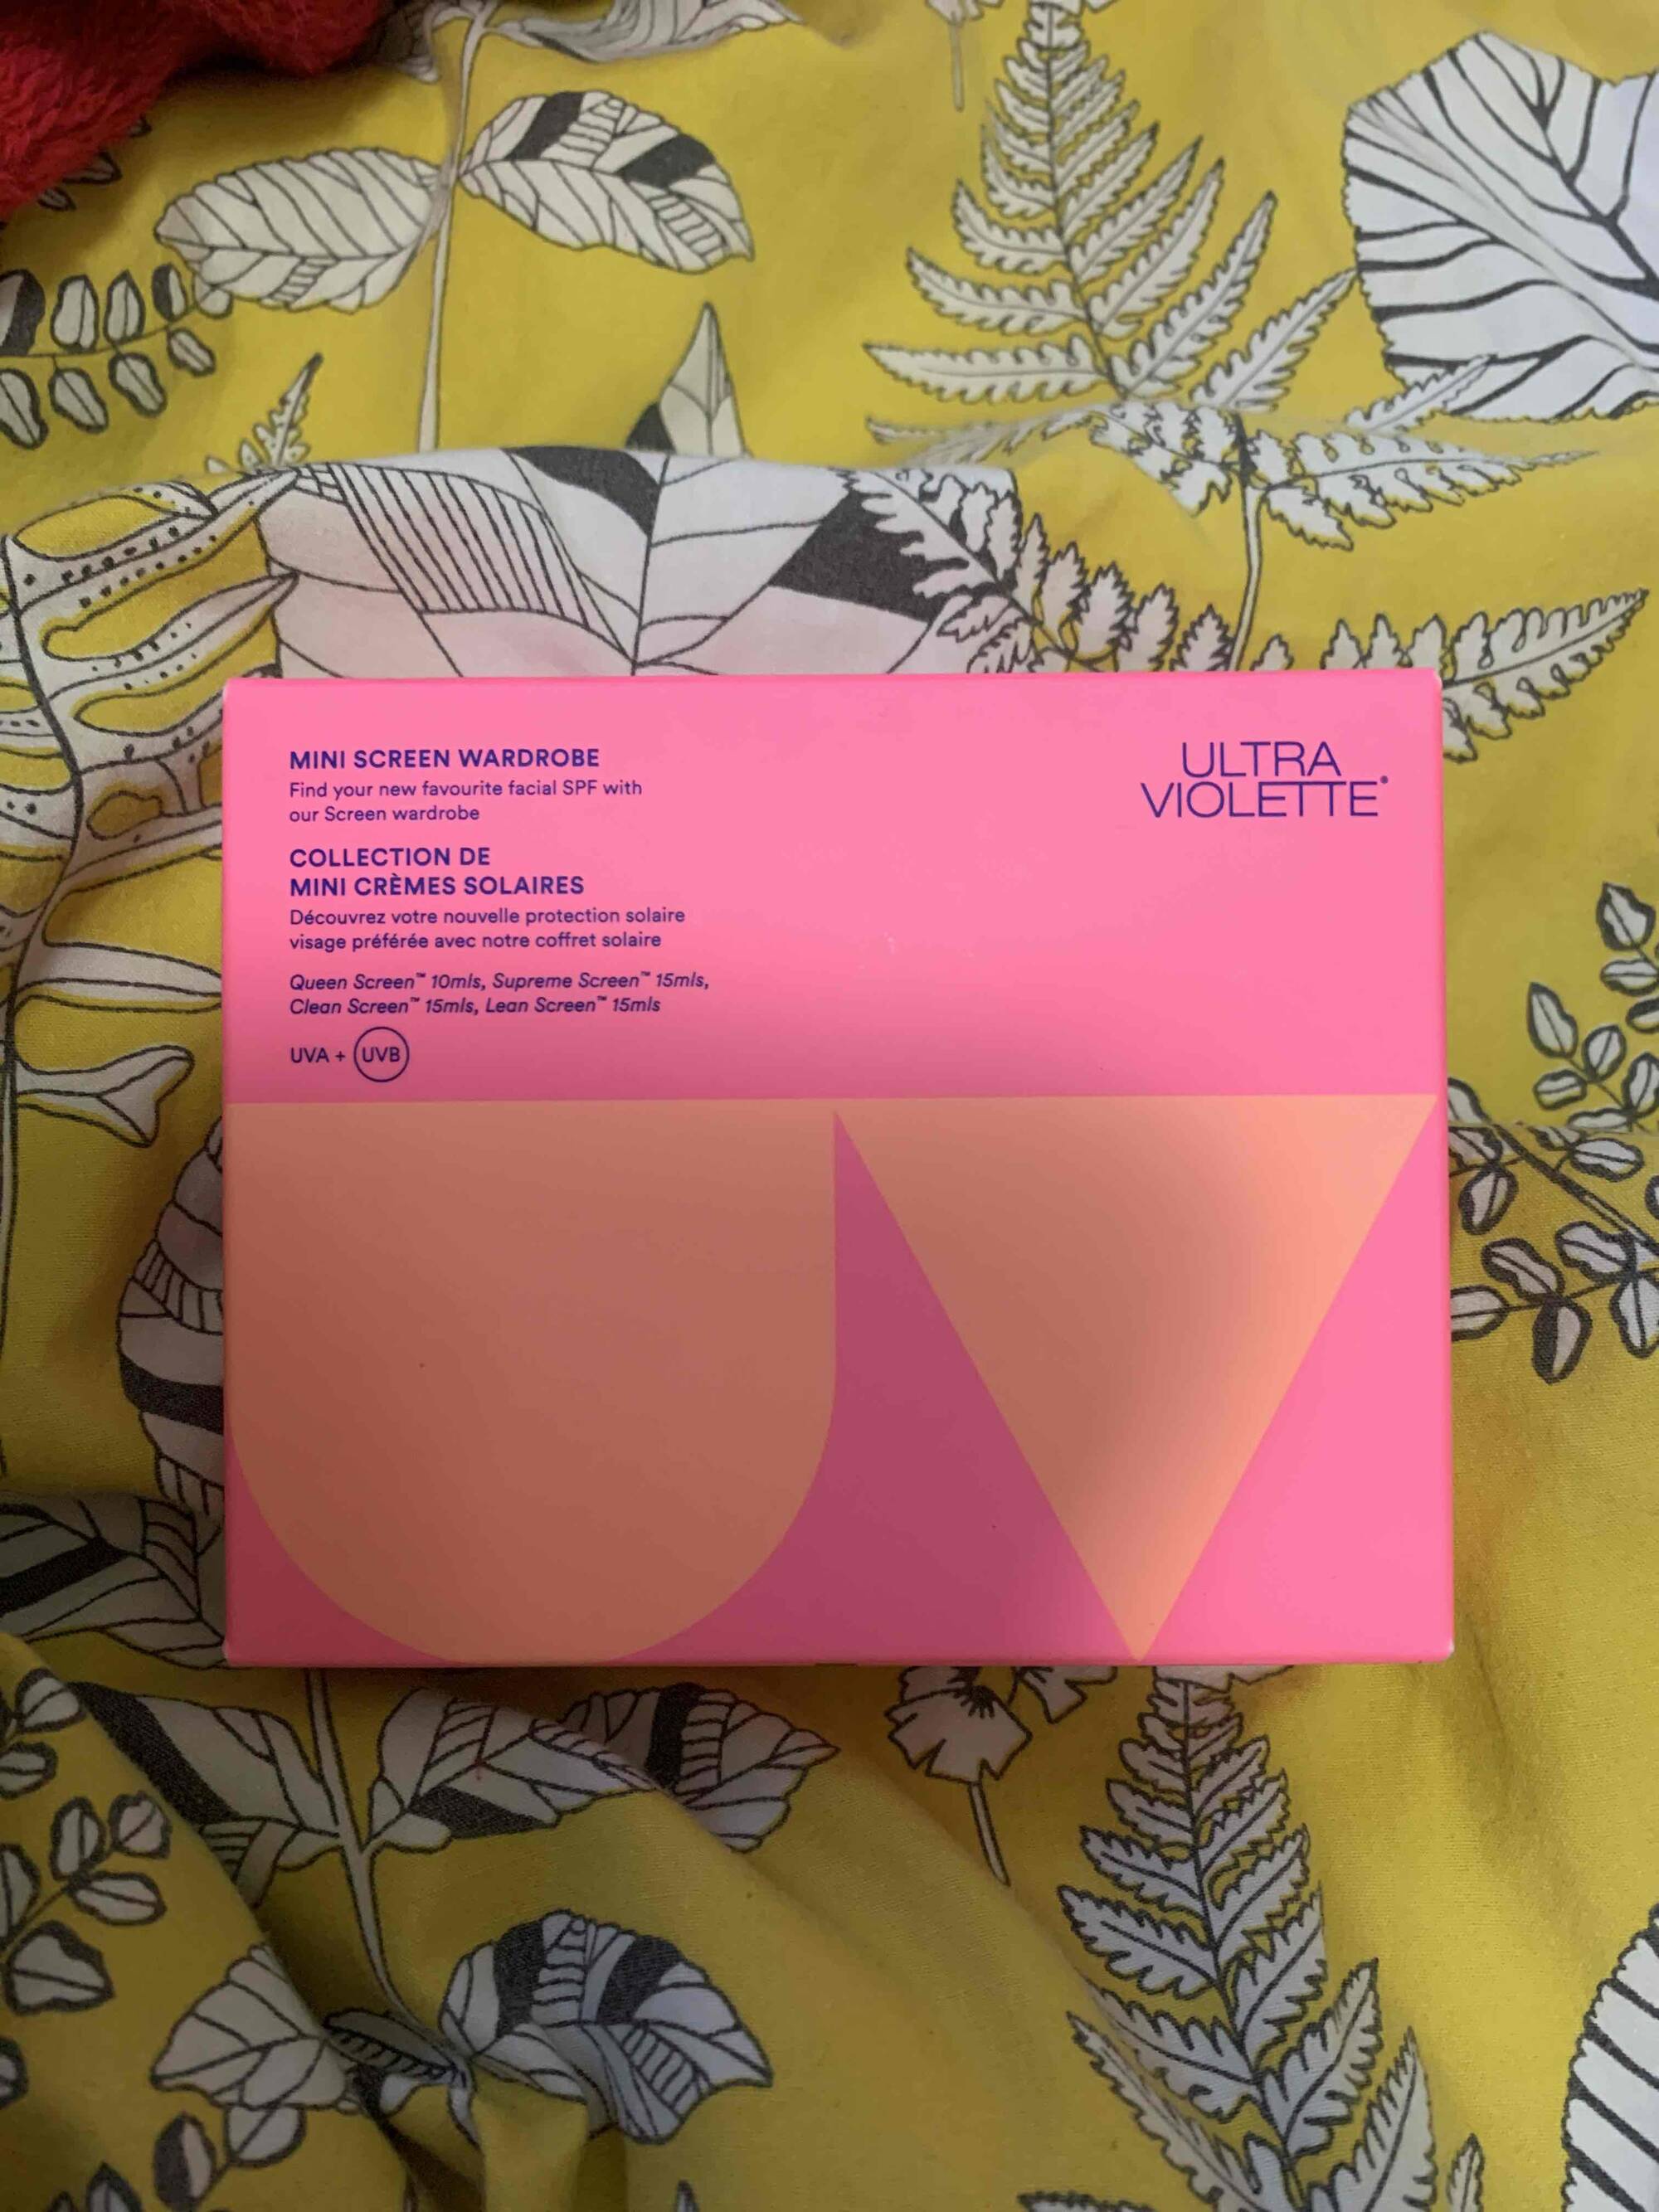 ULTRA VIOLETTE - Collection de mini crèmes solaires